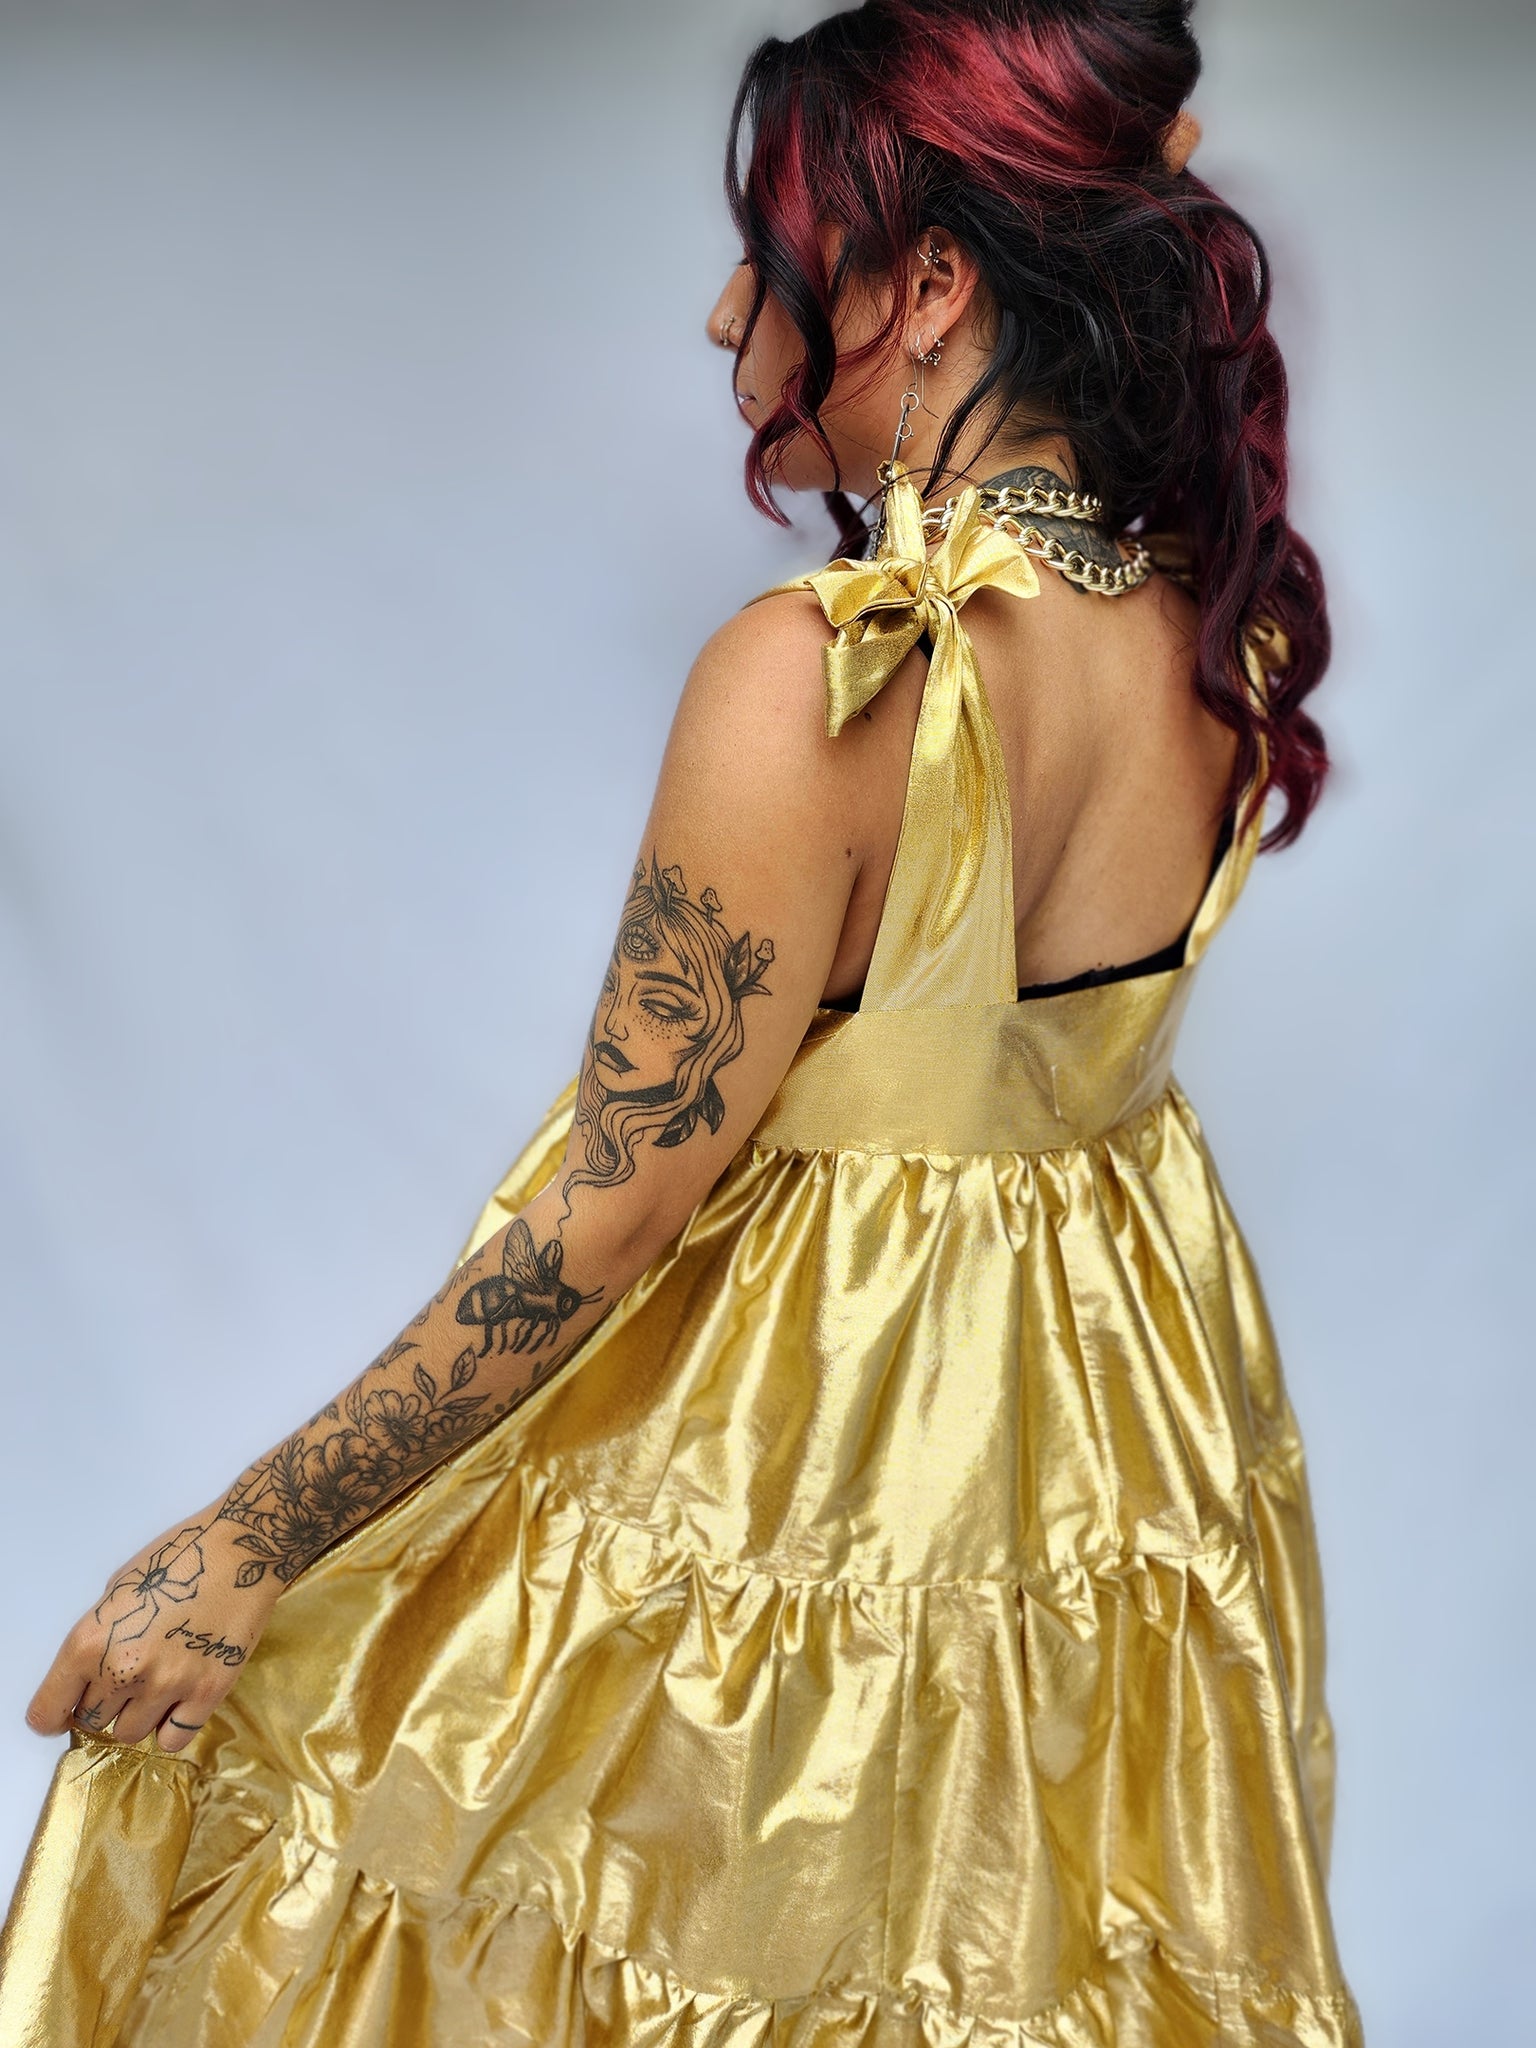 Golden Hour Dress